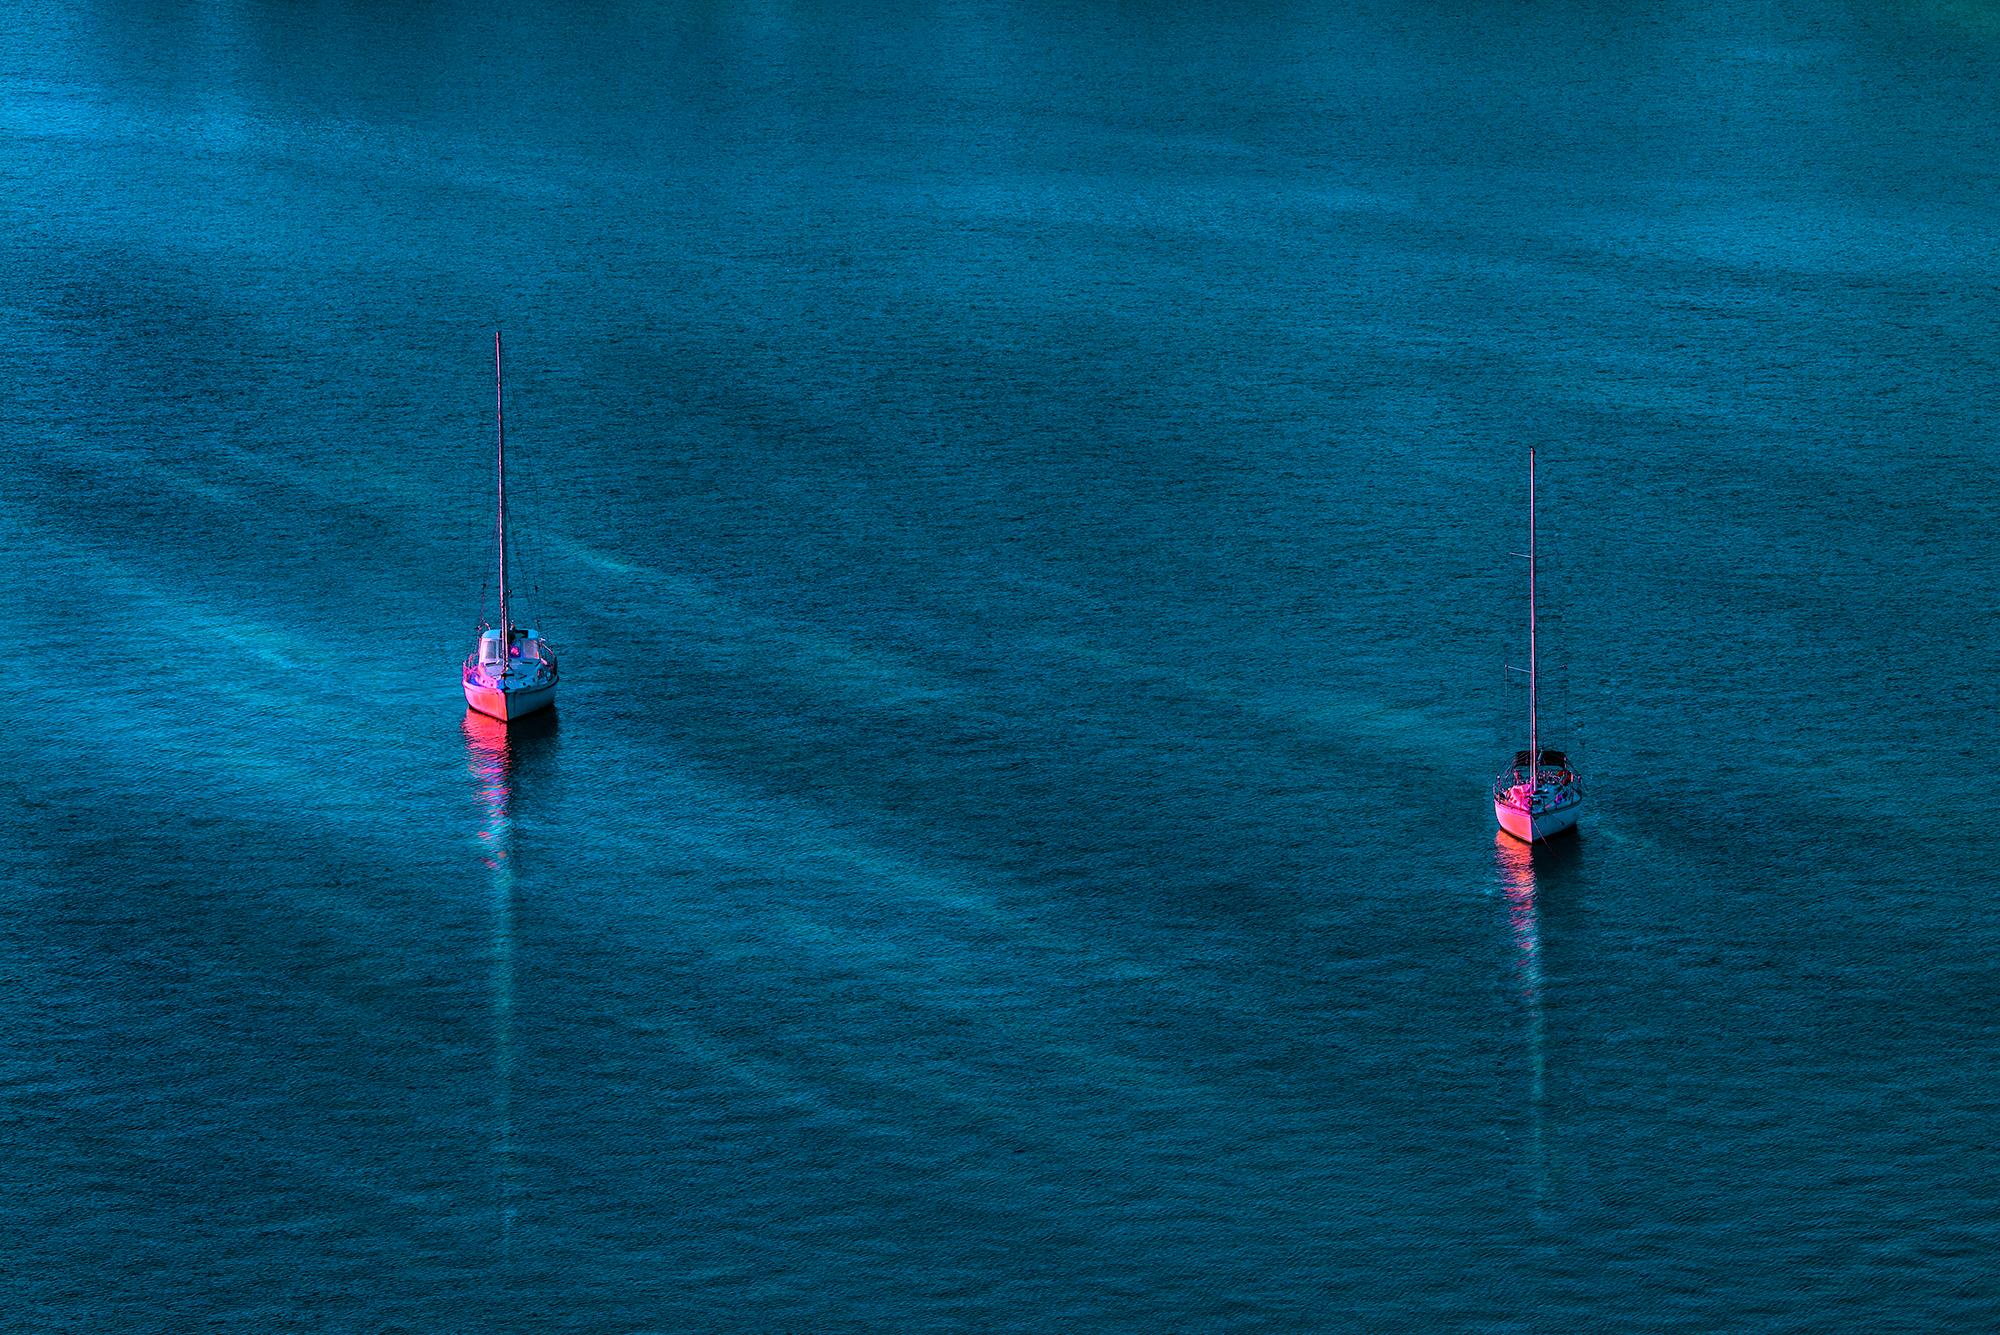 Robert Funk Landscape Photograph – Rosa Segelboote auf einem blau-grünen Meer 